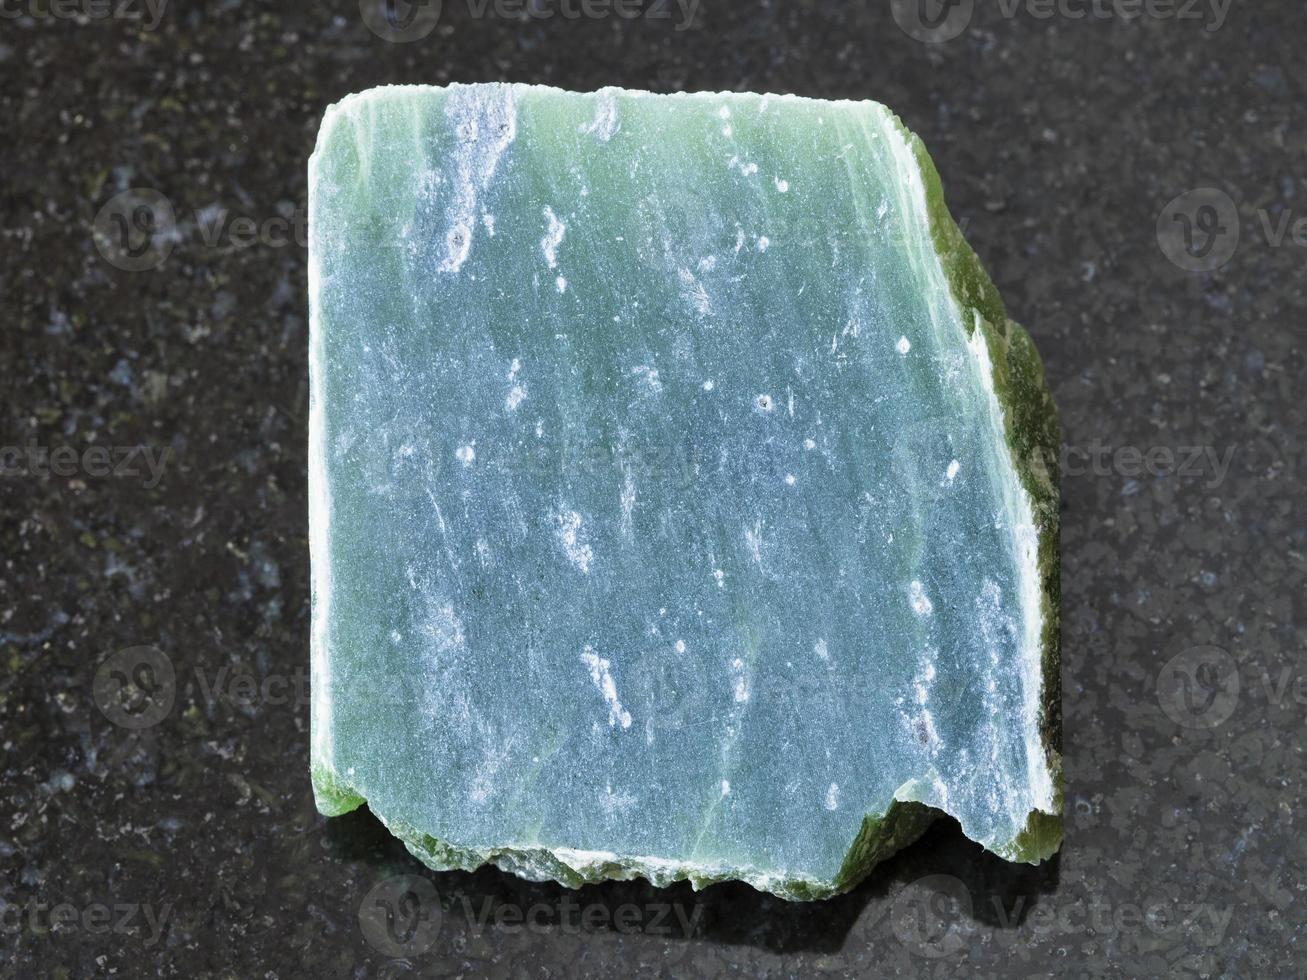 laje de pedra de nefrite cru em fundo escuro foto